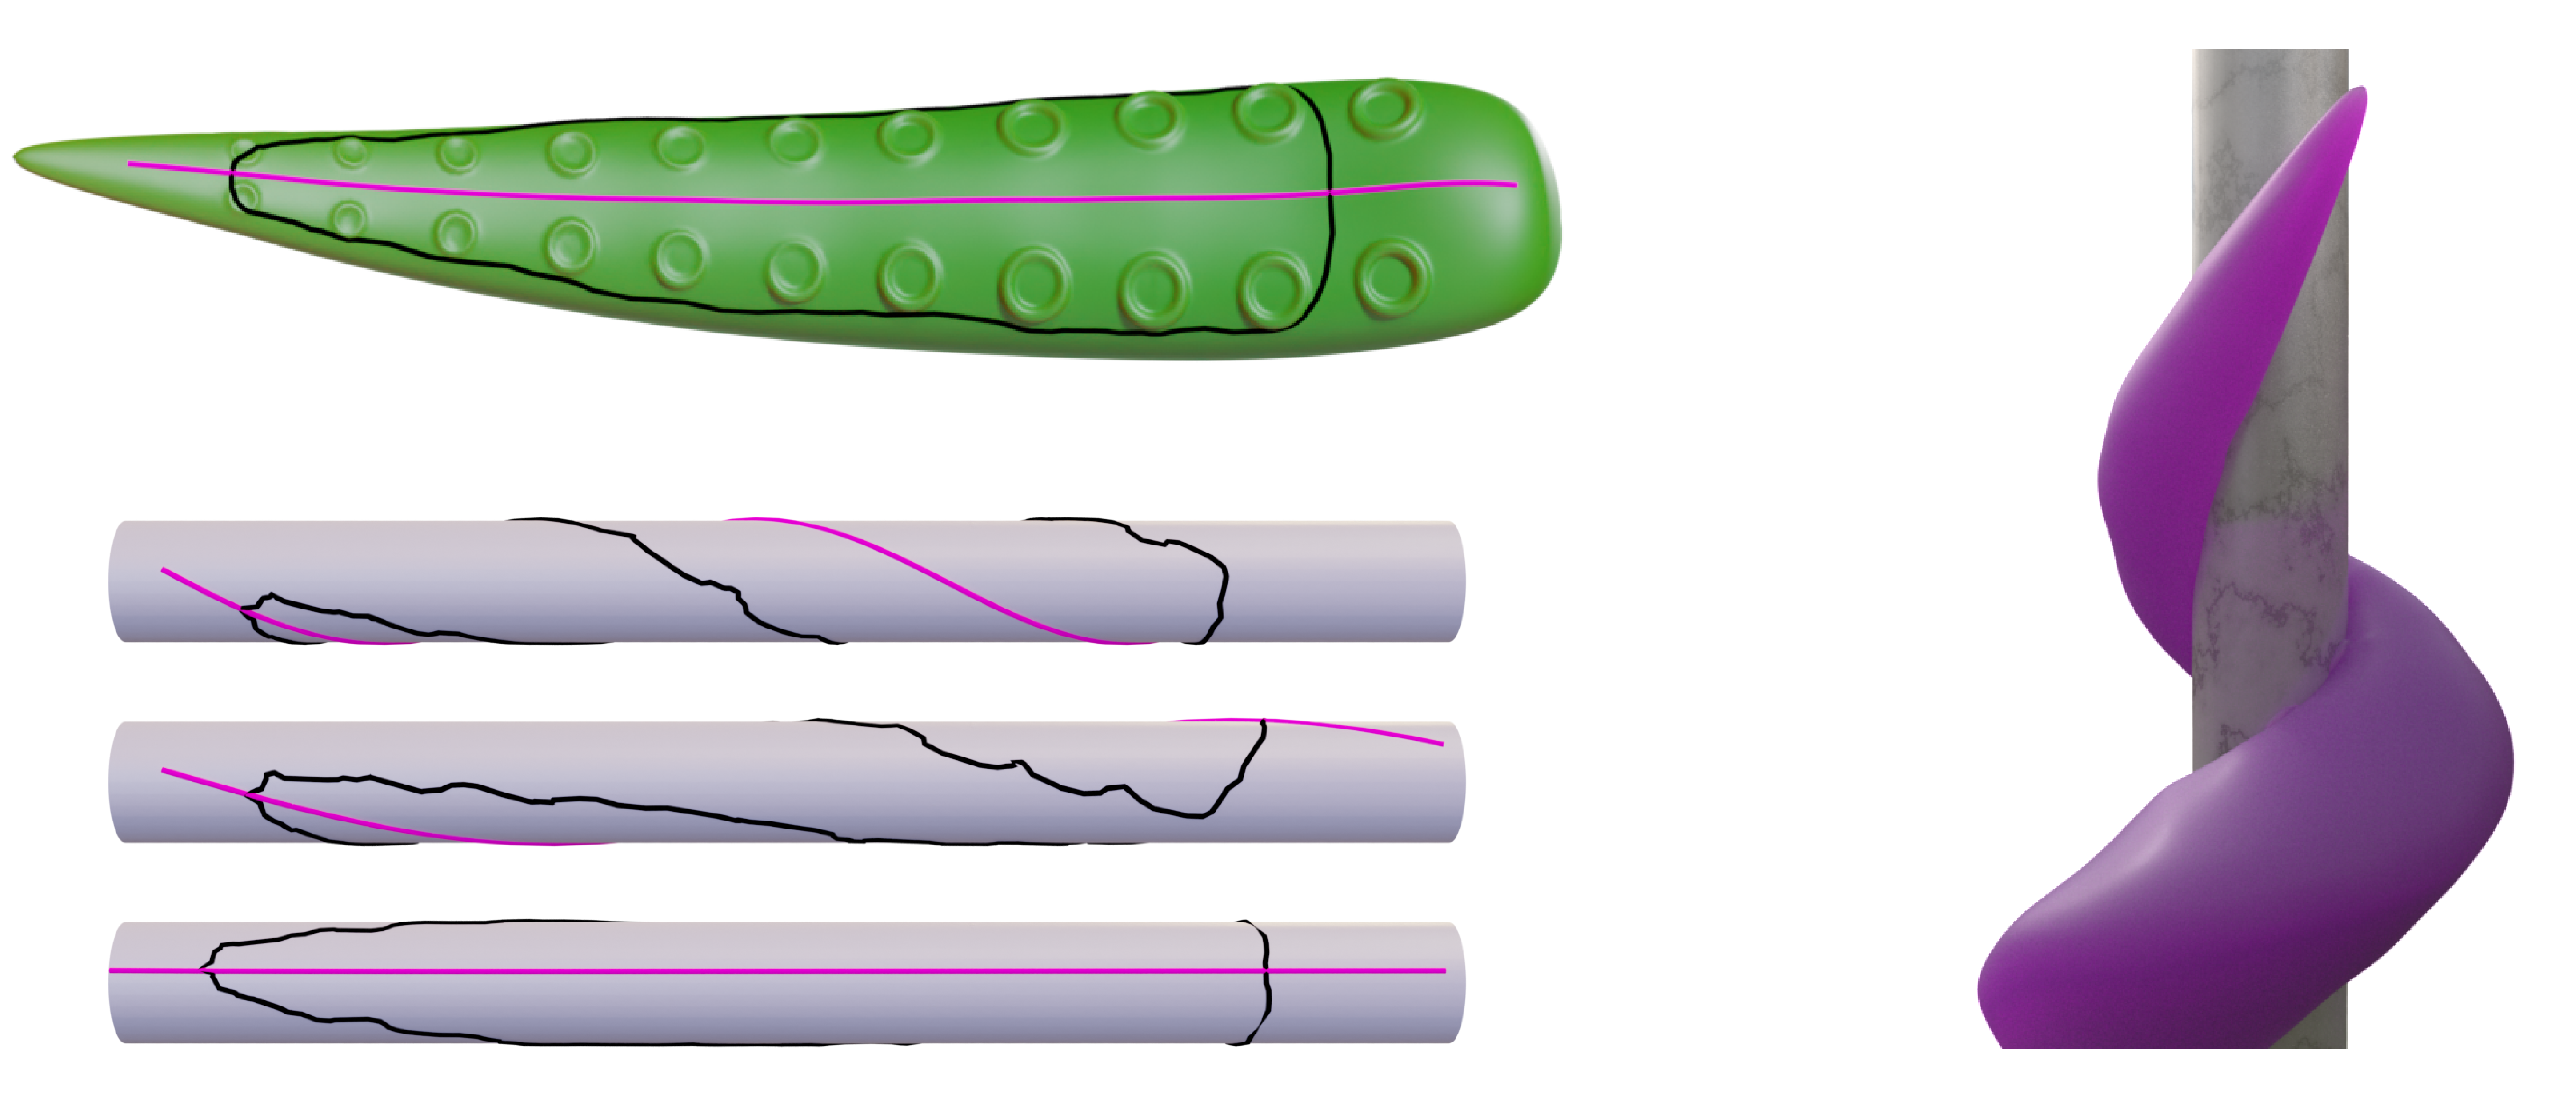 tentacle wrap diagram